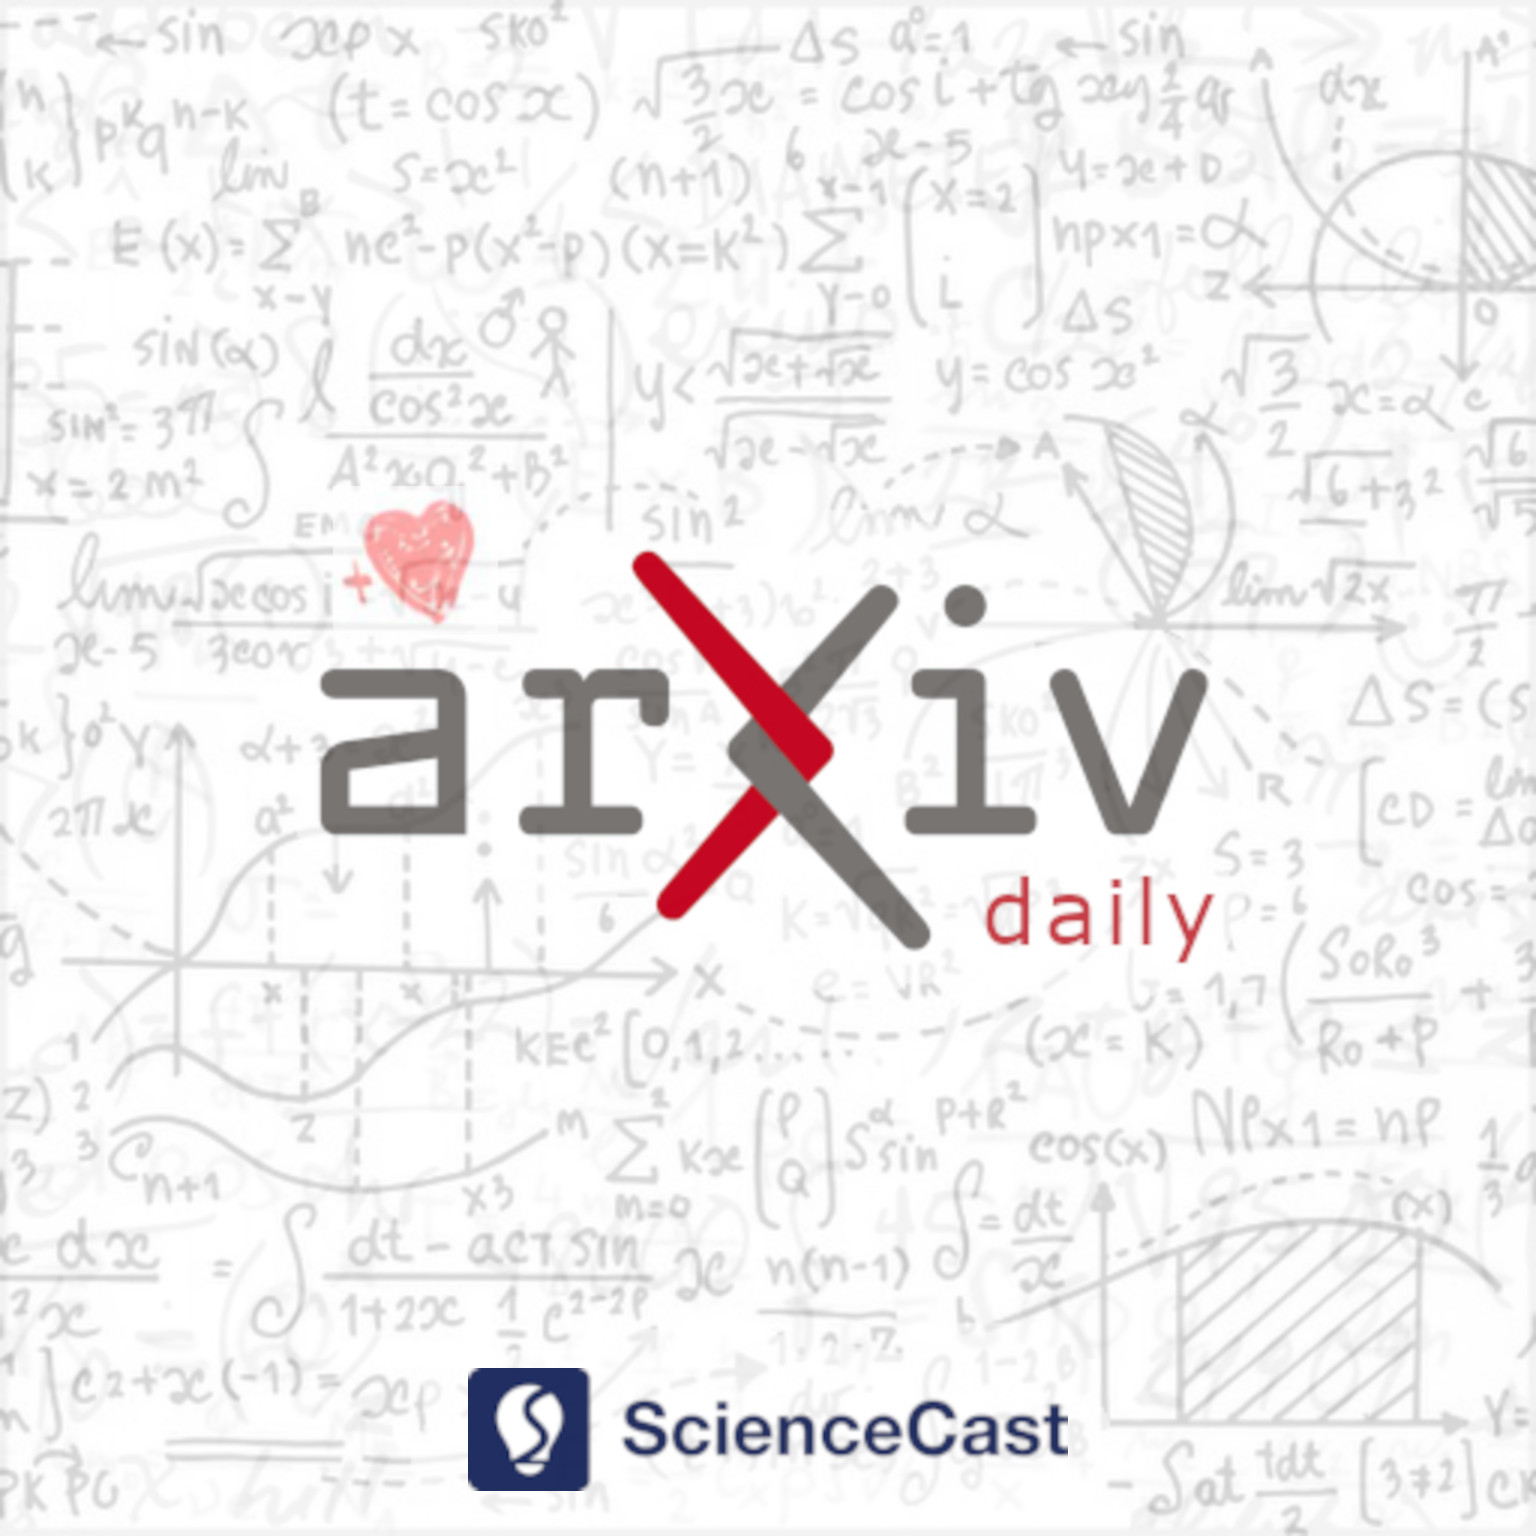 arXiv daily: Methodology